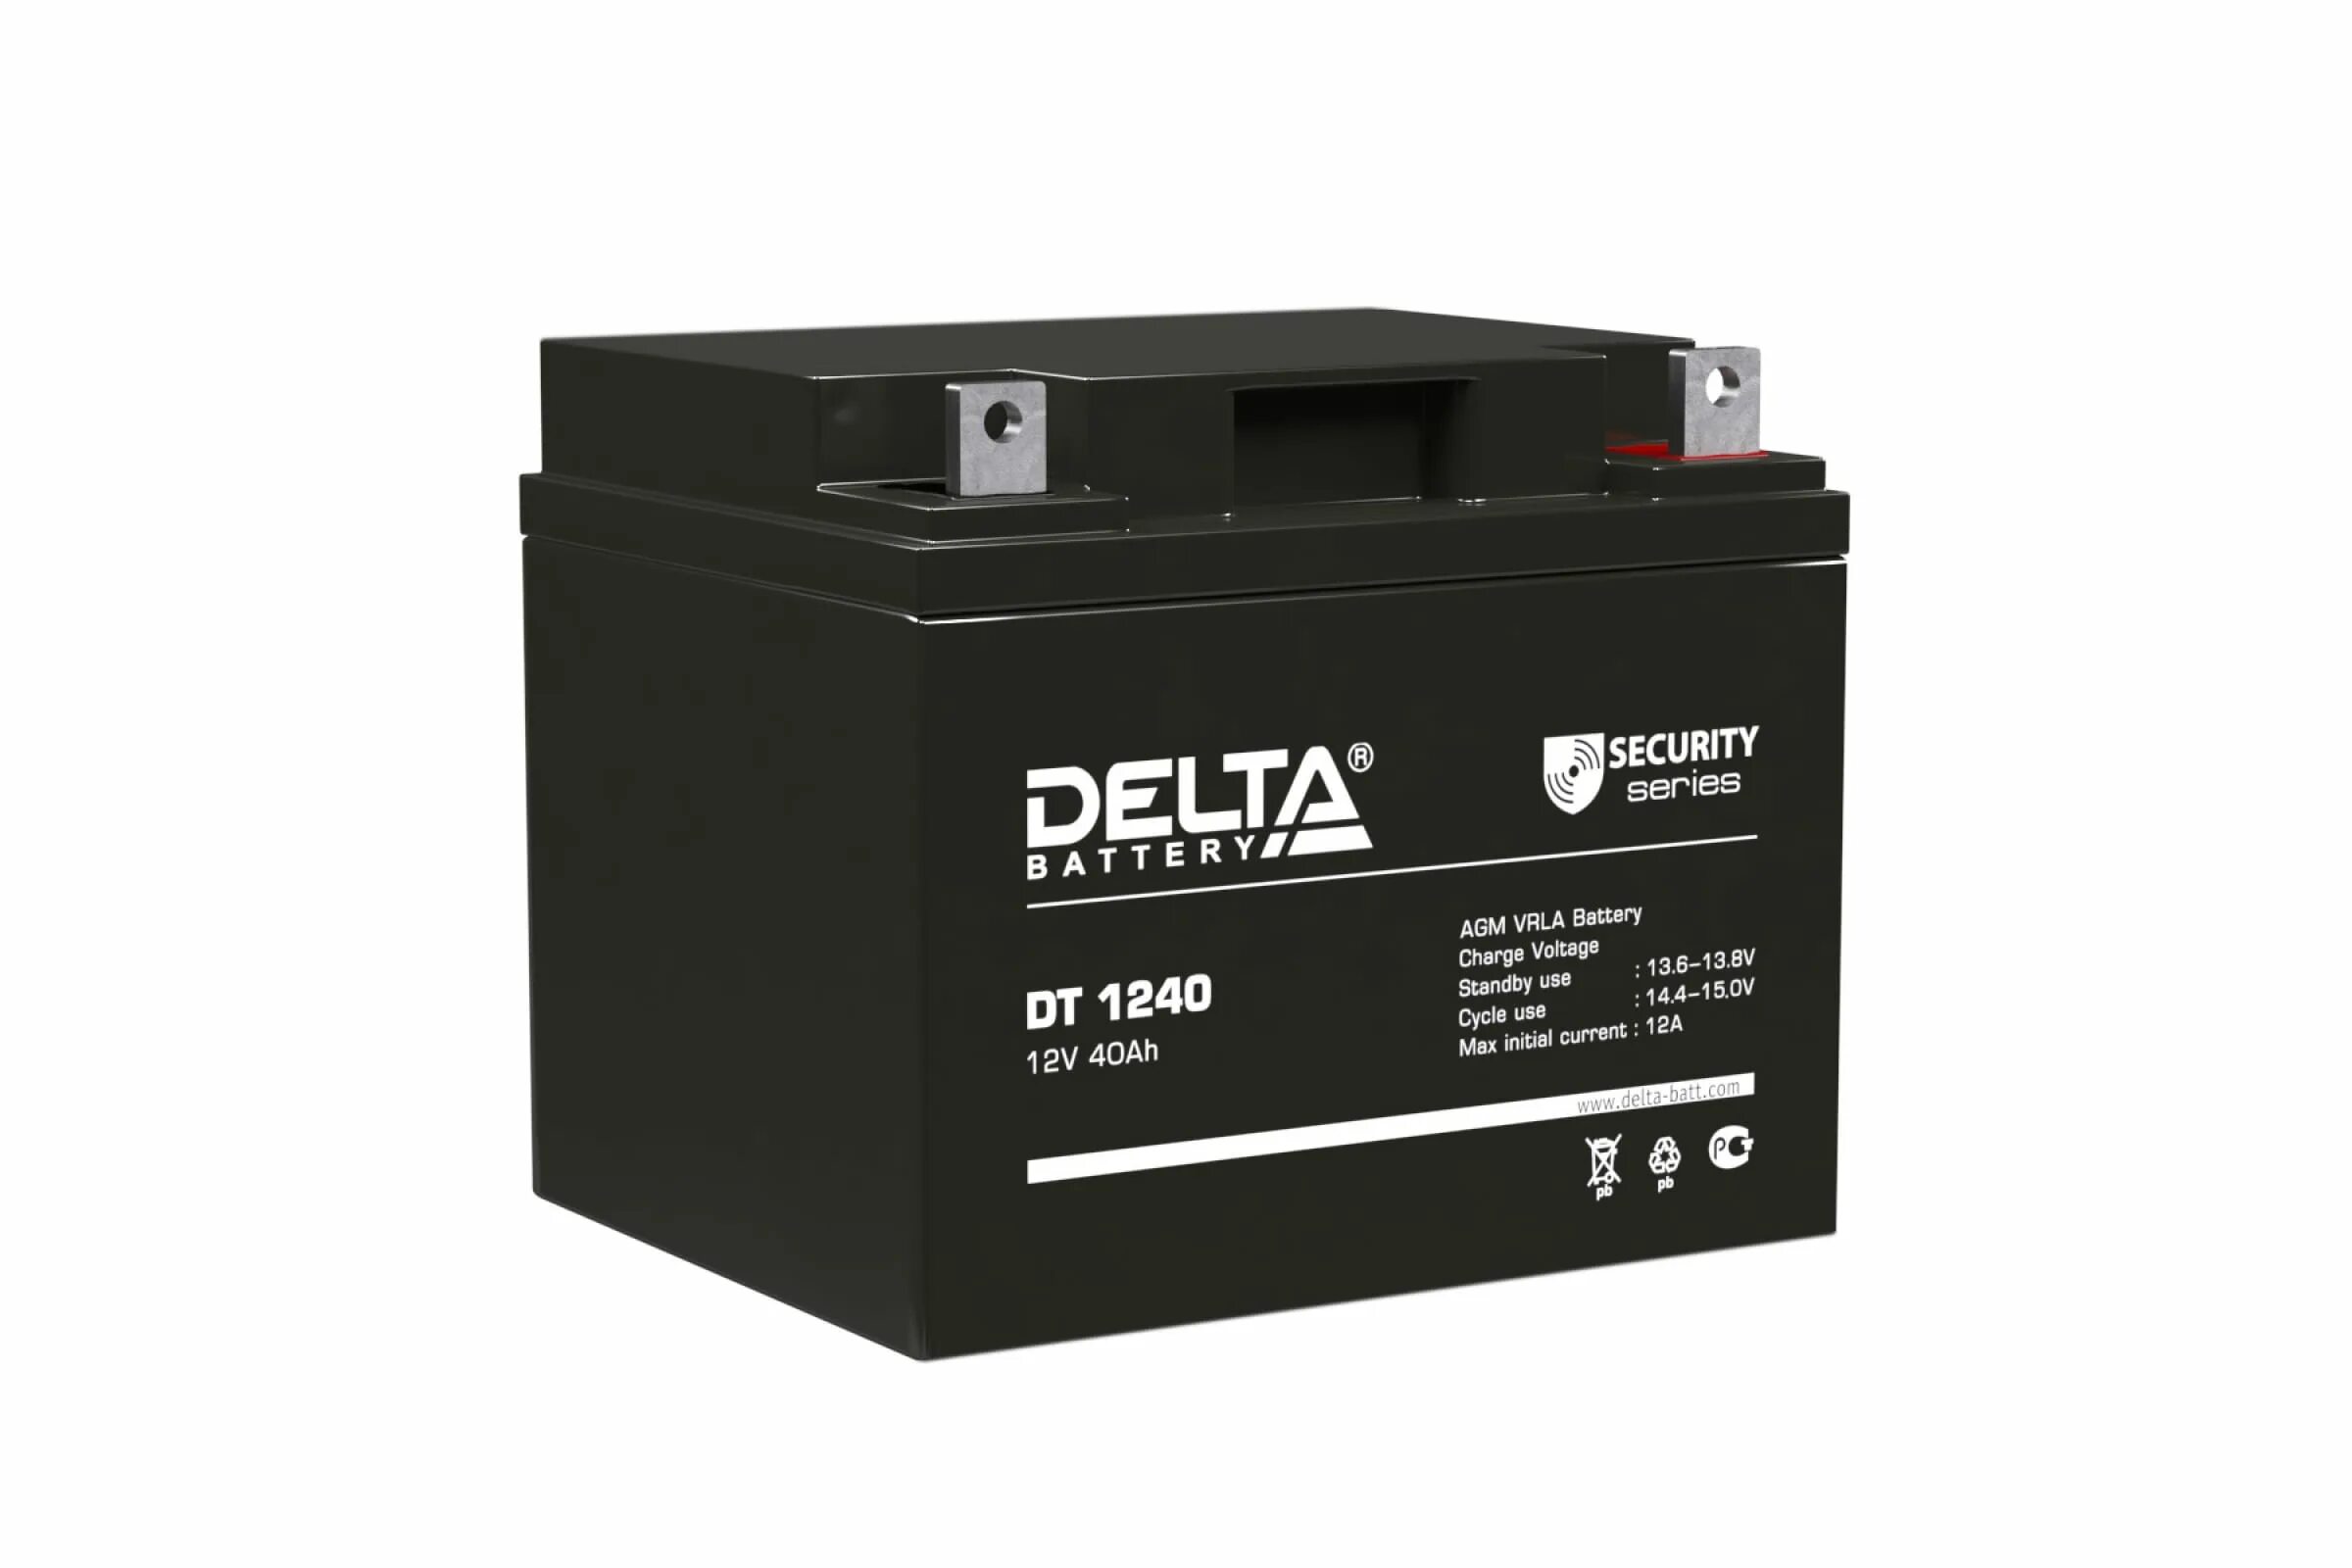 DT 1240 Delta аккумуляторная батарея. АКБ Delta DT 1240 12v 40ah. Аккумуляторная батарея SF 1240 12v 40ah. SF 1240 аккумулятор 40ач 12в. Аккумулятор 12v 40ah